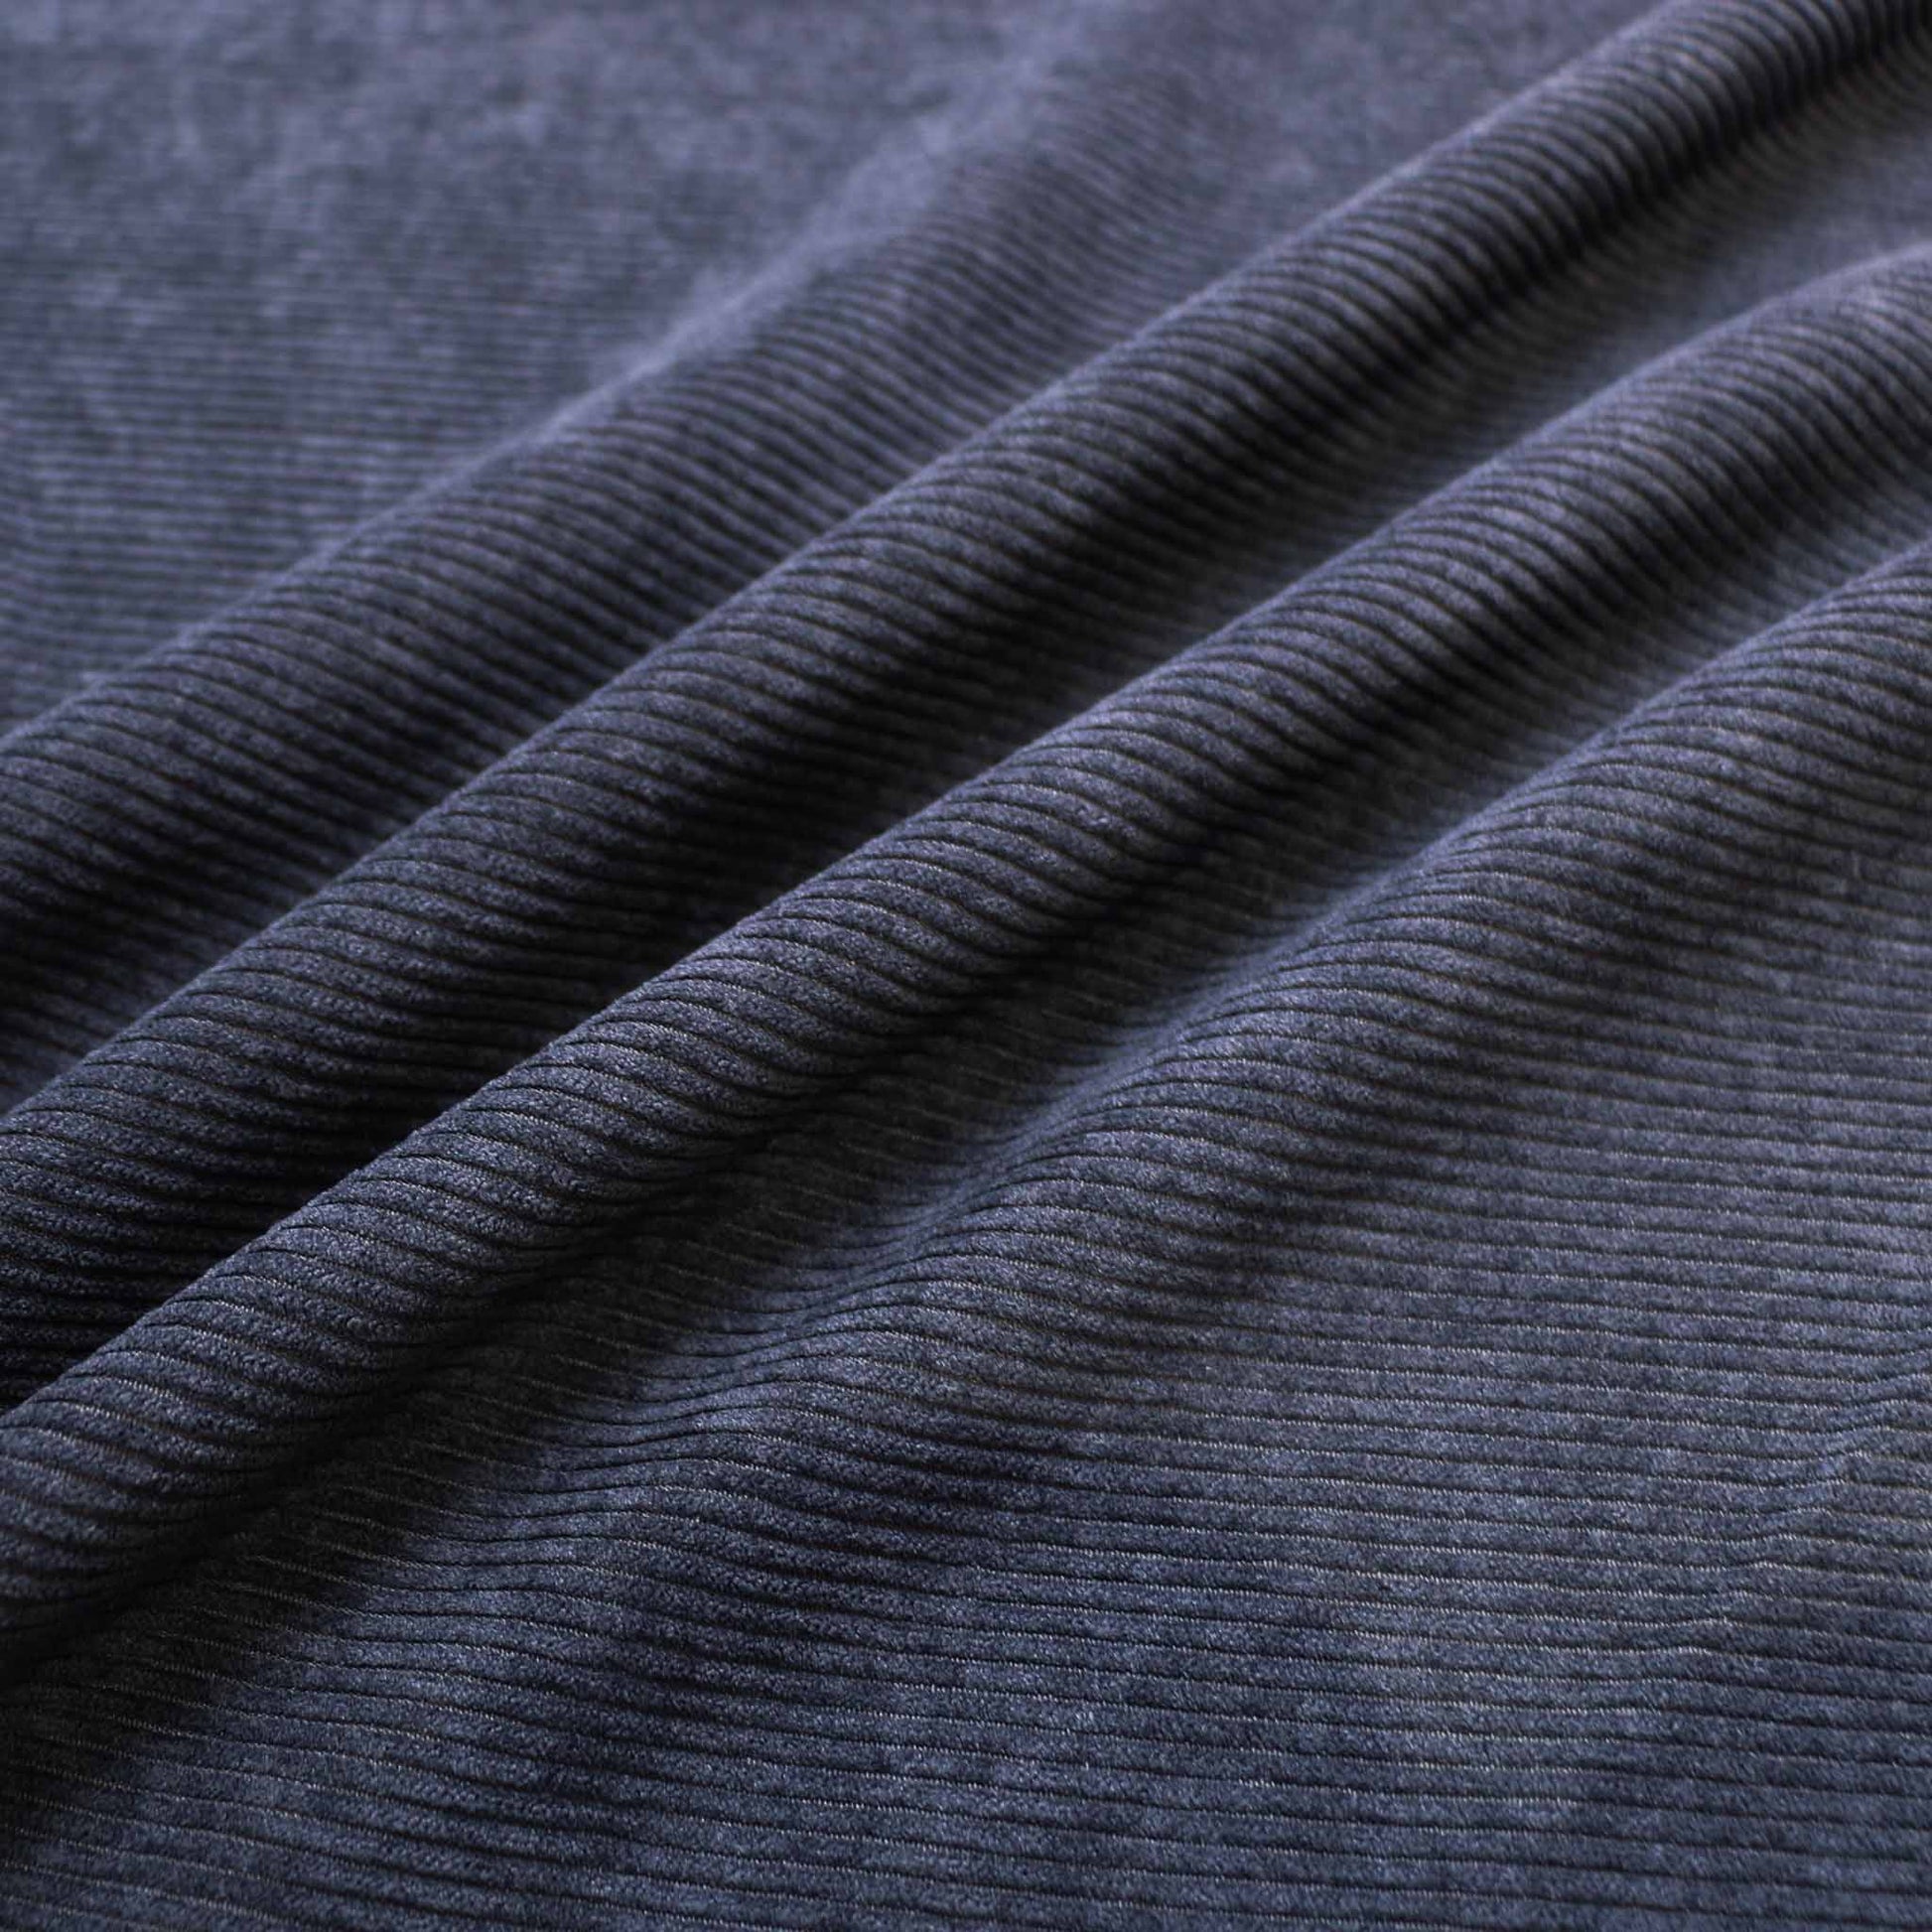 8 wale jumbo corduroy velvet dressmaking fabric in navy colour